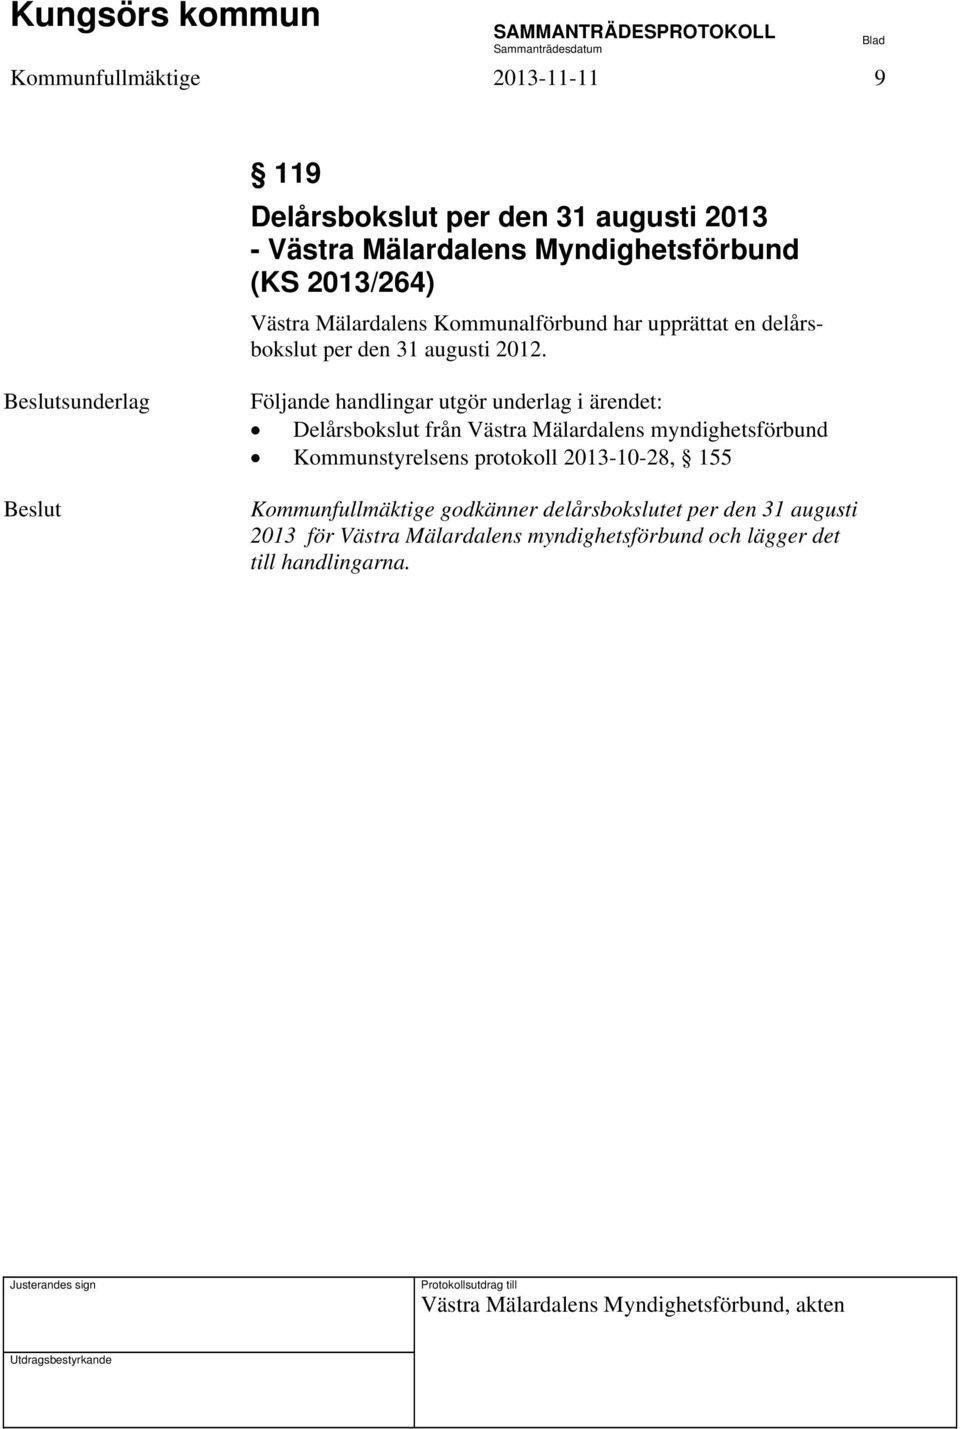 Delårsbokslut från Västra Mälardalens myndighetsförbund Kommunstyrelsens protokoll 2013-10-28, 155 Kommunfullmäktige